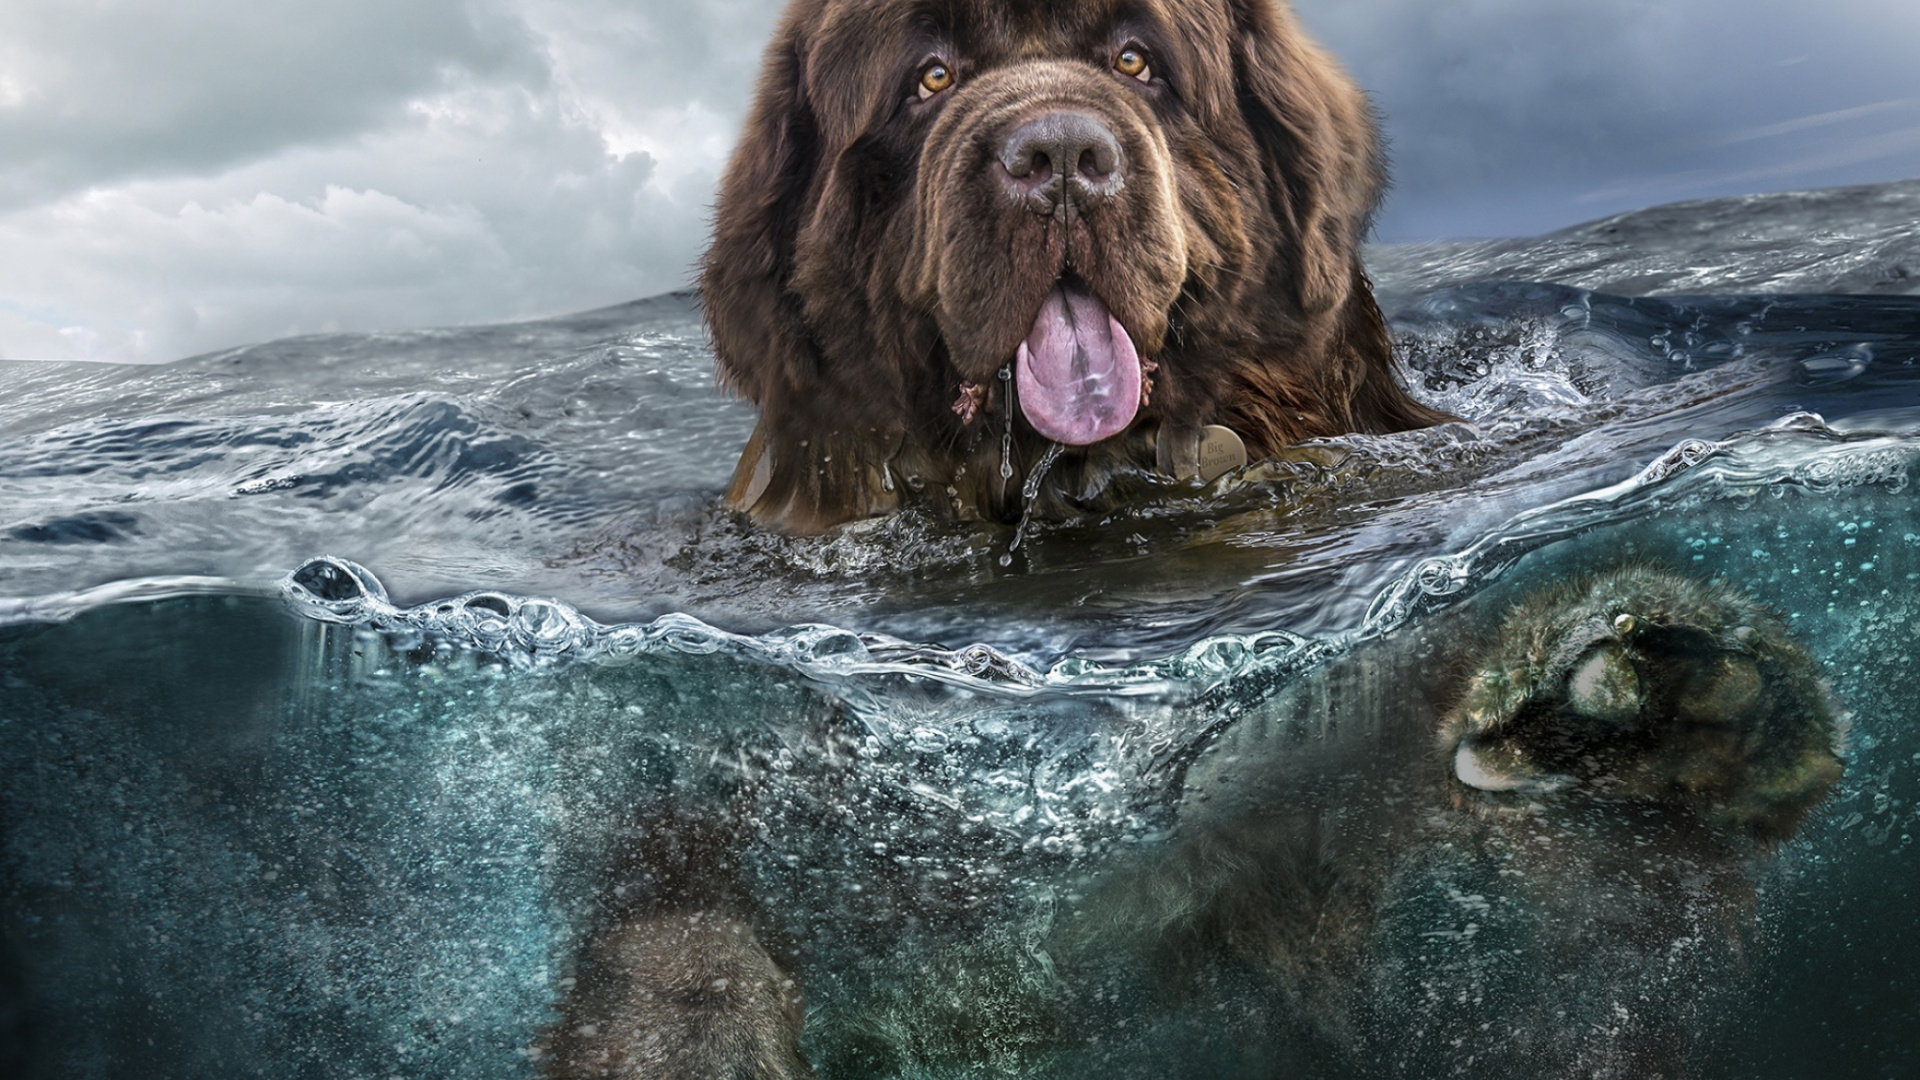 Brauner Langhaariger Hund im Wasser. Wallpaper in 1920x1080 Resolution